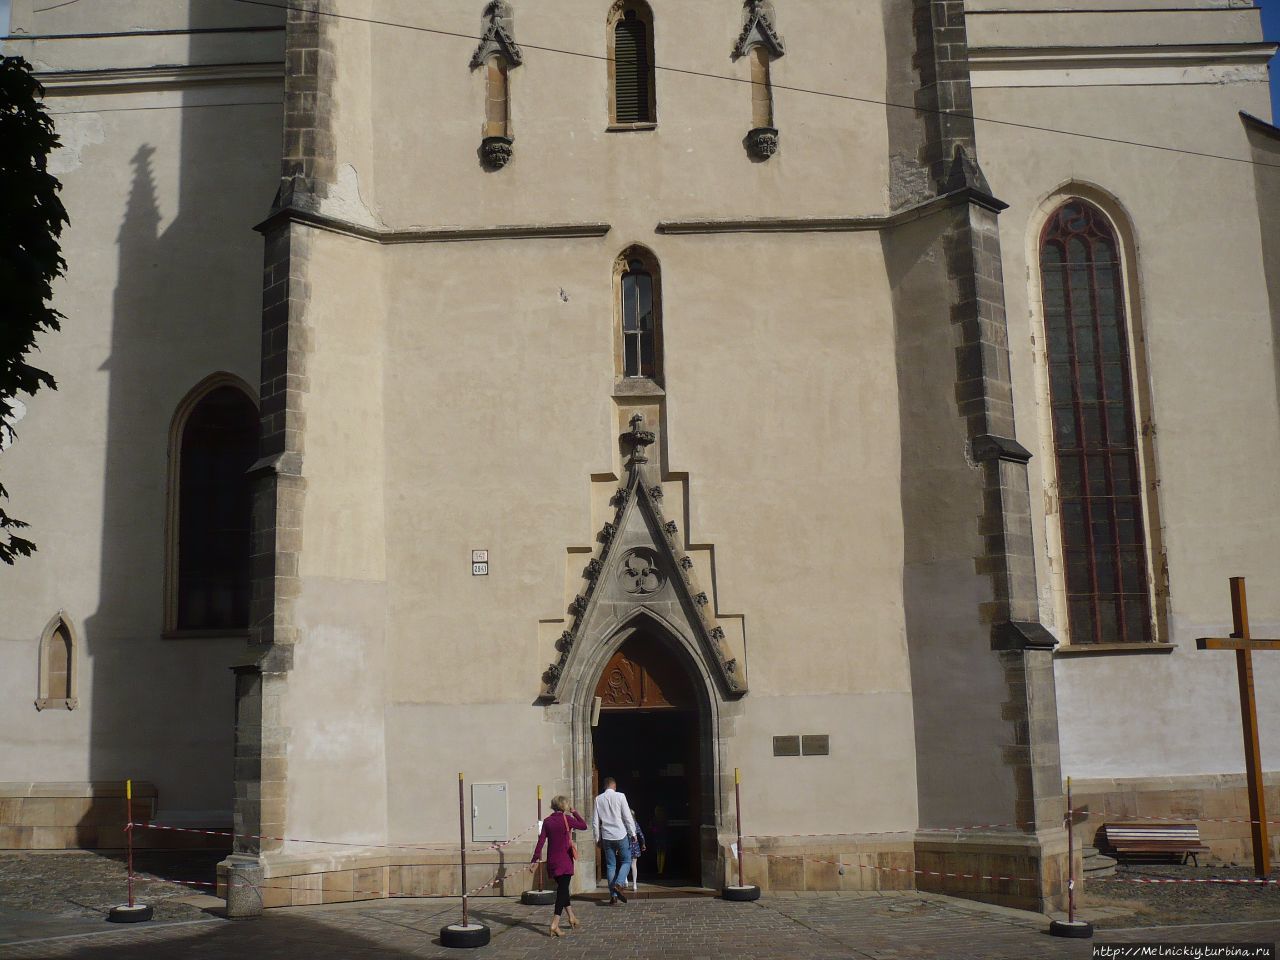 Собор Святого Миклуша - главный собор Прешова